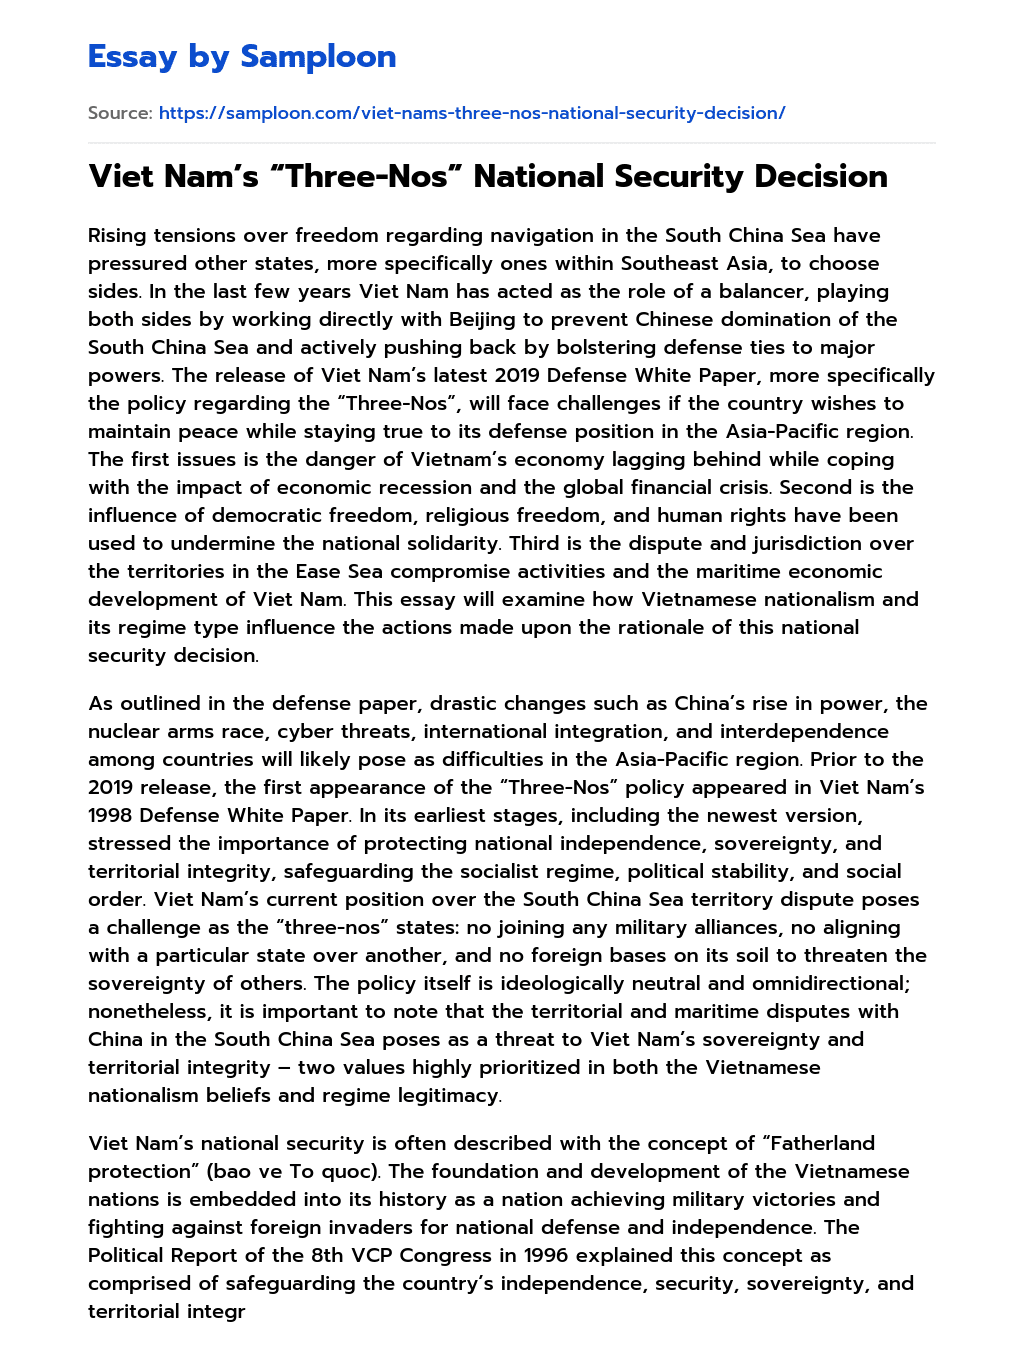 Viet Nam’s “Three-Nos” National Security Decision essay